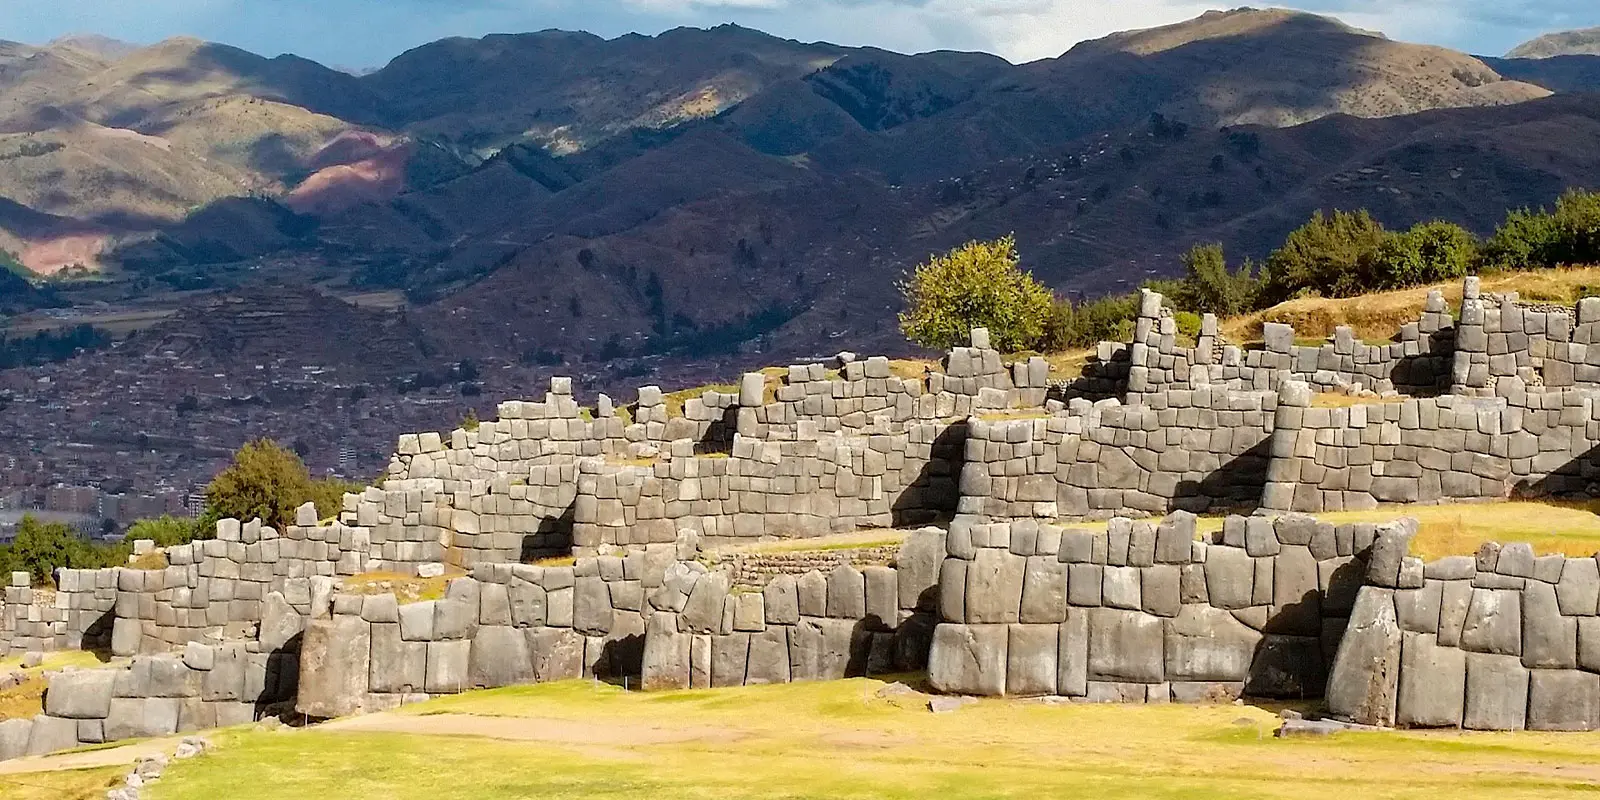 Saqsayhuman ruins